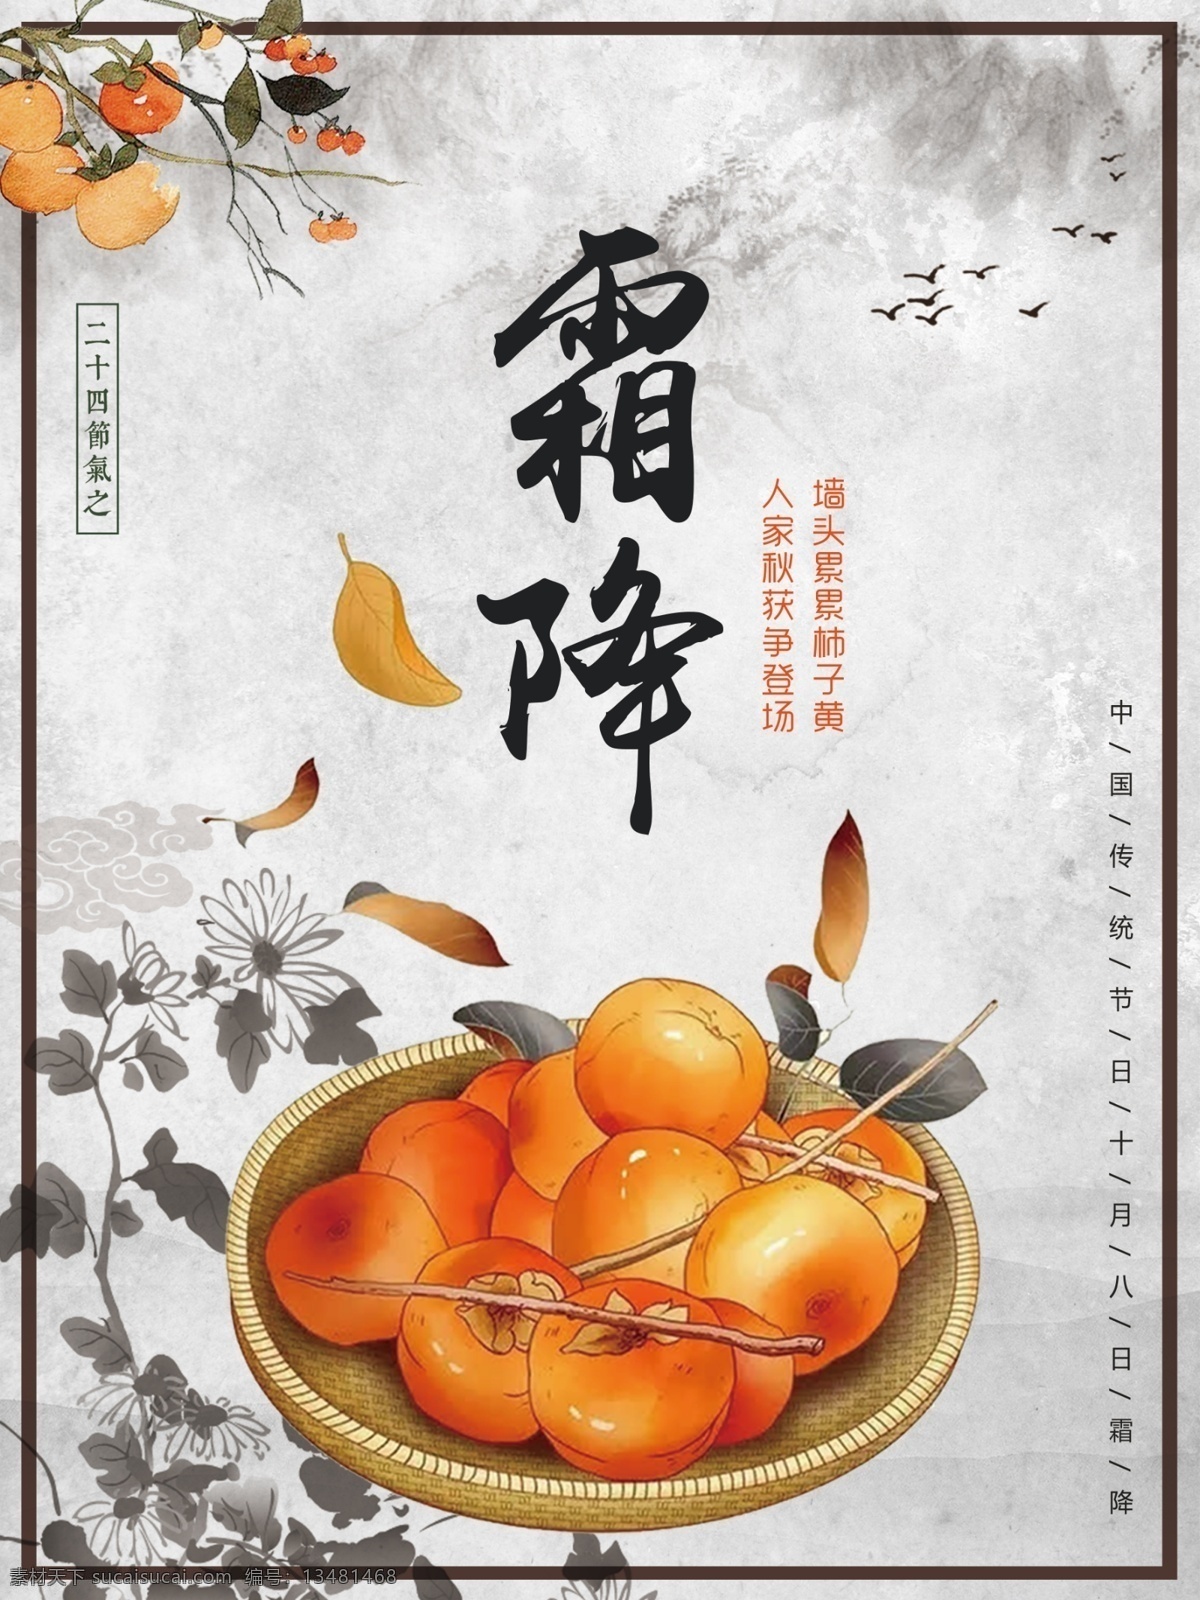 中国 风霜 降 节日 海报 柿子 二十四节气 传统节日 初冬 节日海报 霜降